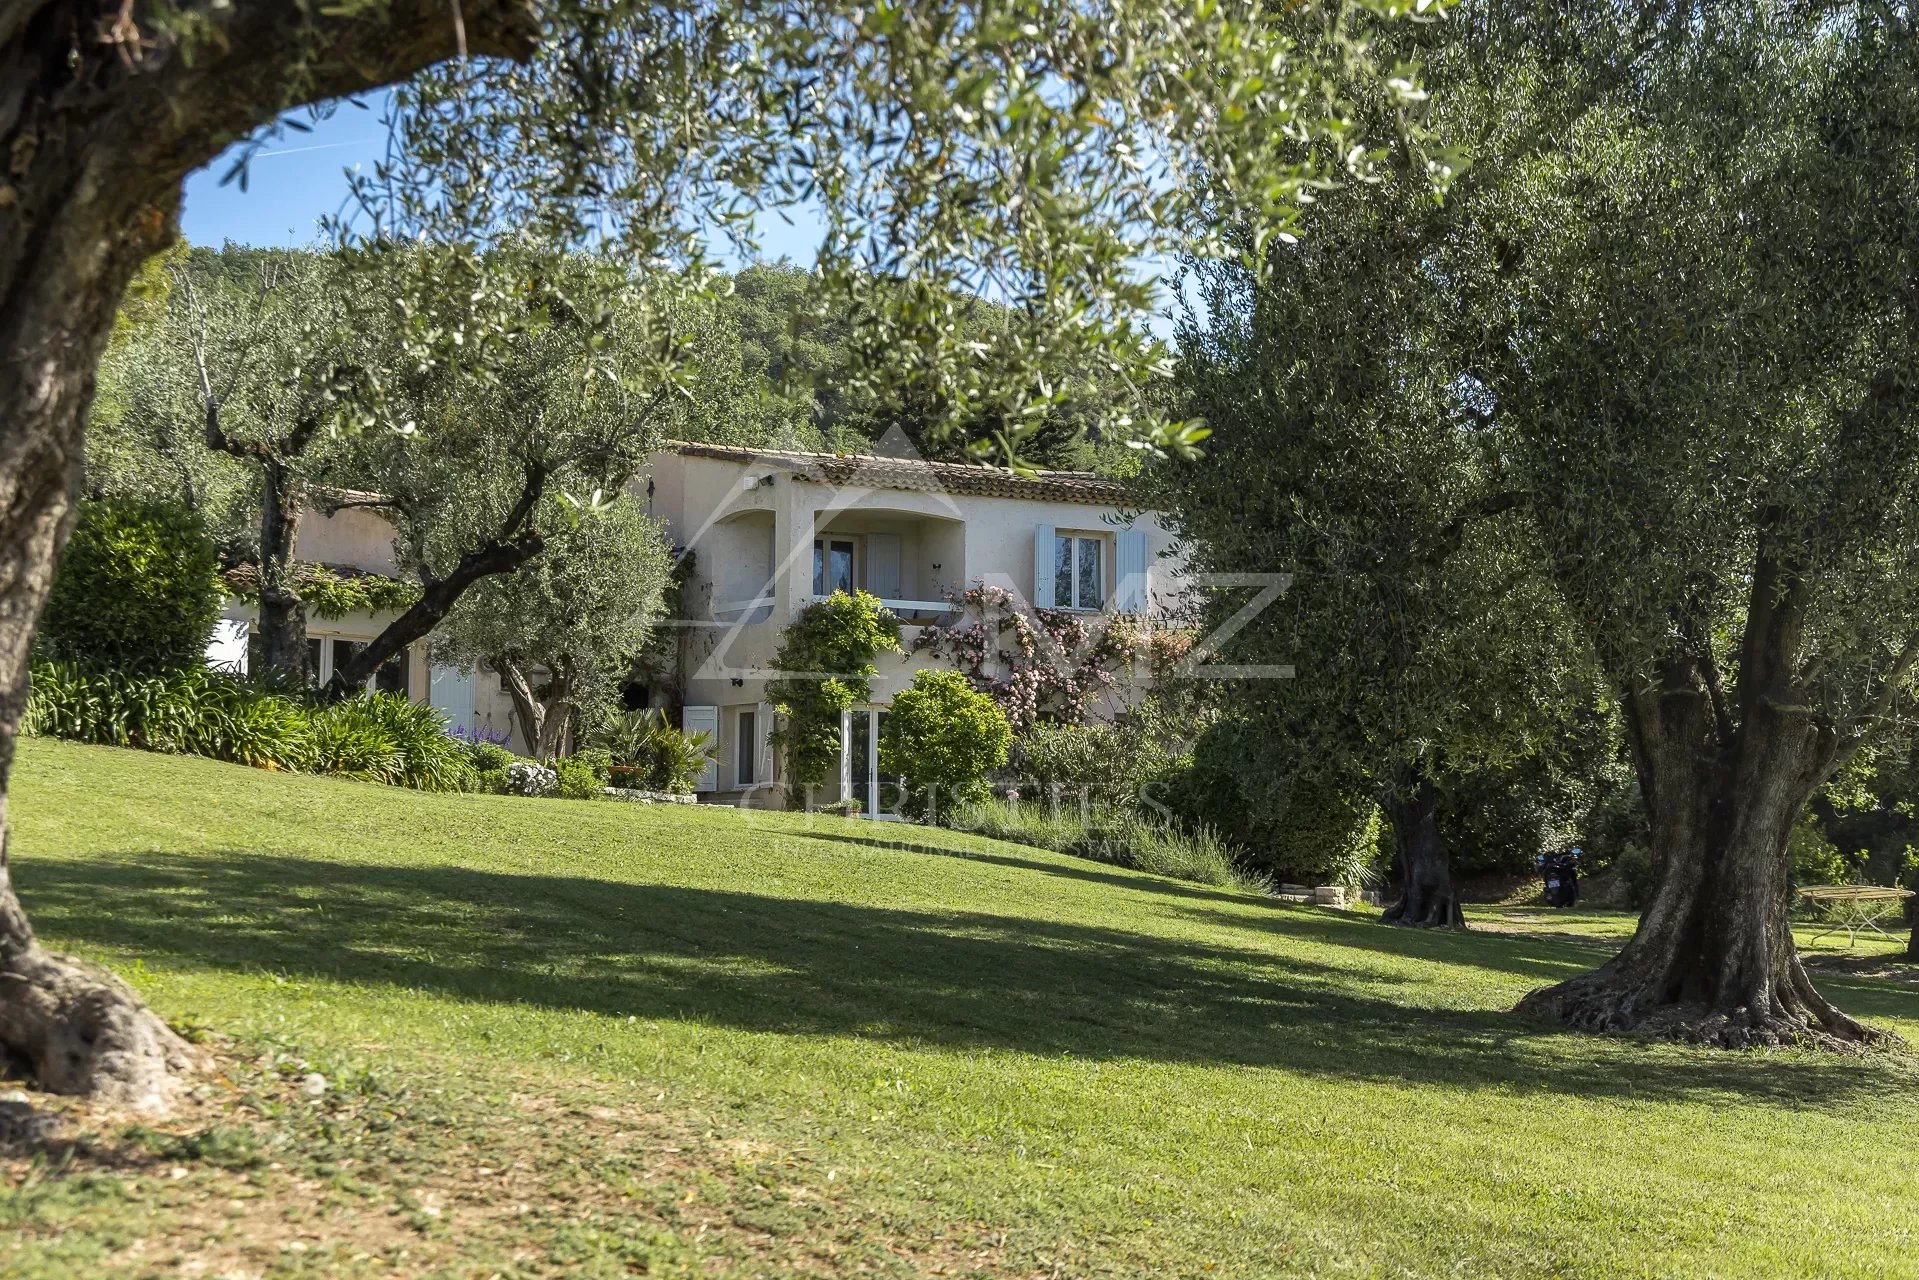 Close to Saint-Paul-de-Vence - Charming provencal style property